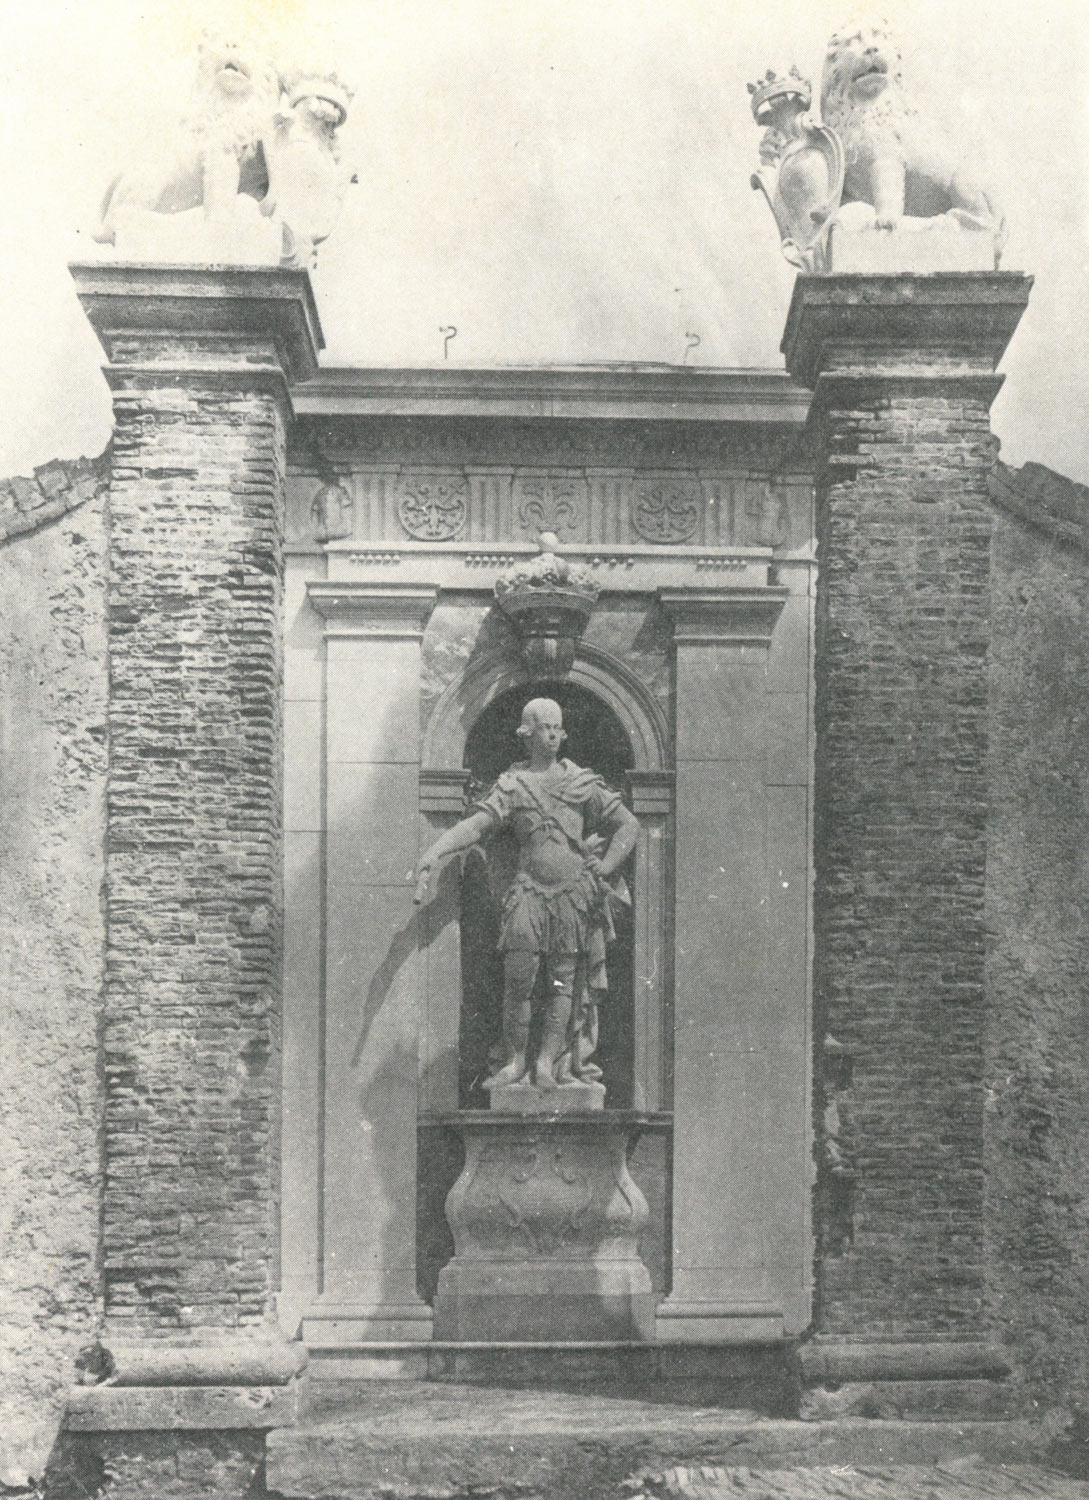 La statua in una rara foto di fine XIX secolo Ã¨ ritratta nella sua composizione e collocazione originale
